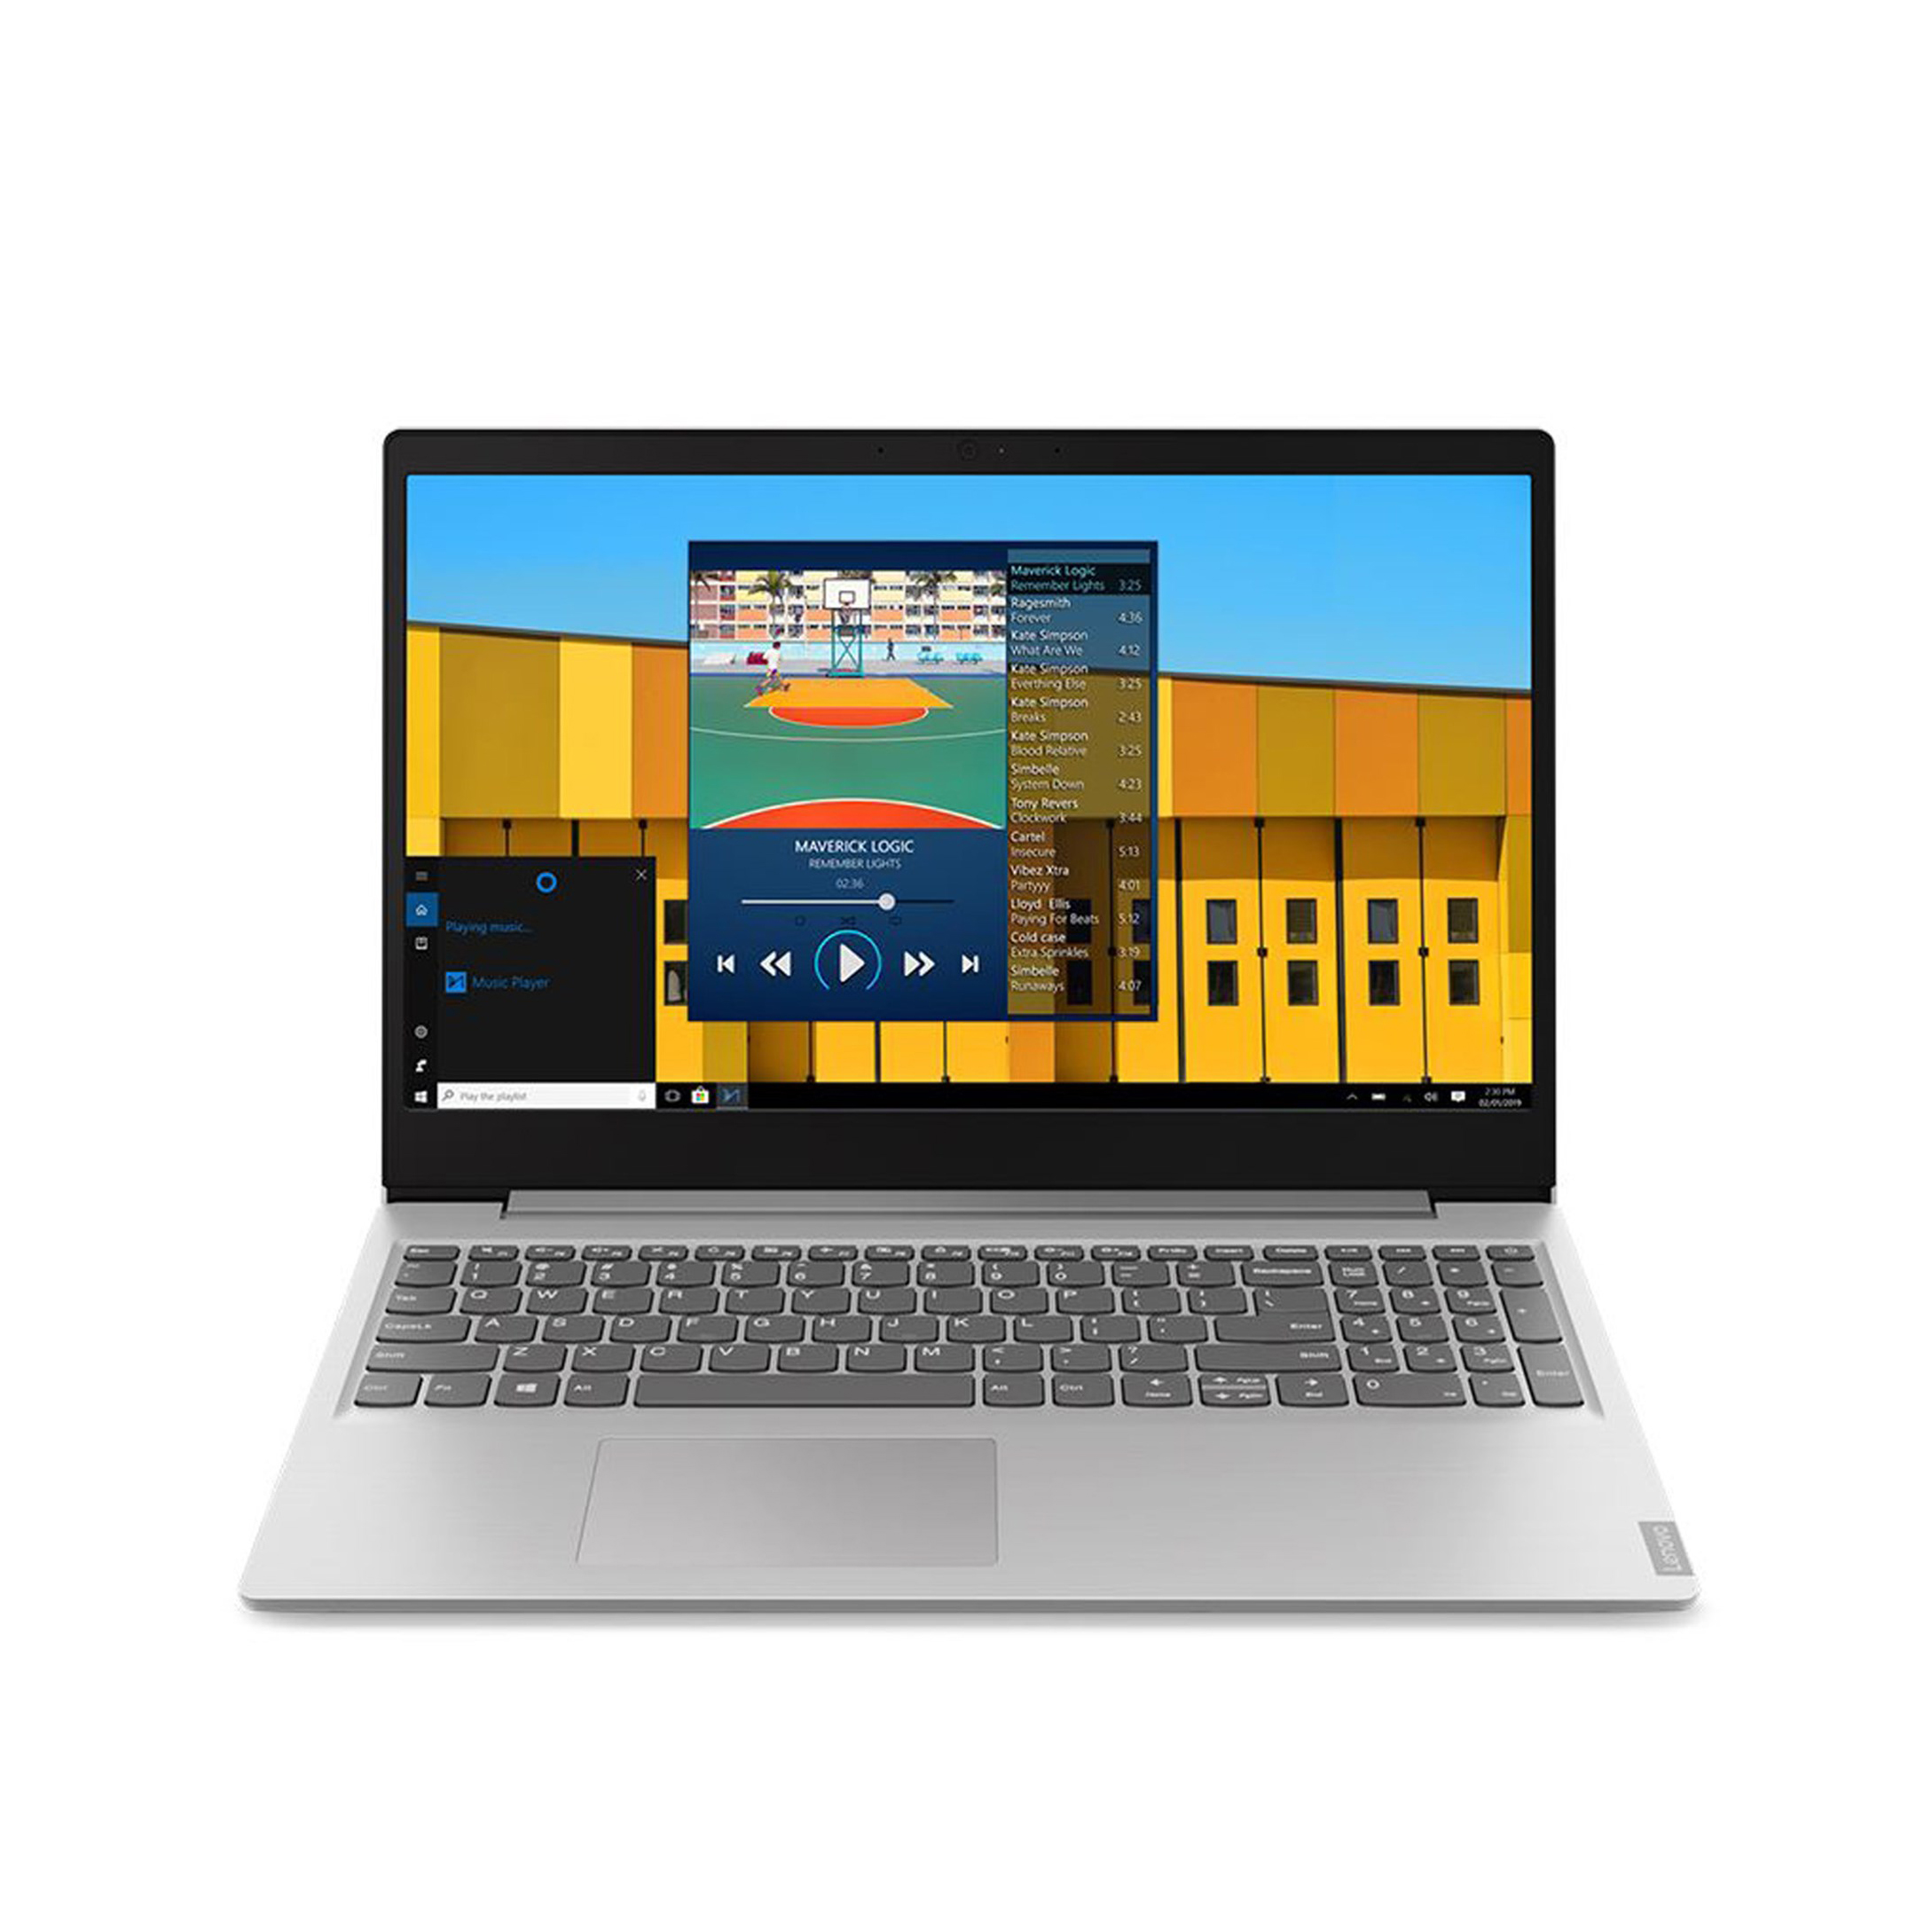 Laptop Lenovo IdeaPad S145-15IWL (i5 1035G1/4GB RAM/256GB SSD/15.6 inch FHD/Win 10/Grey) - 81W8001YVN